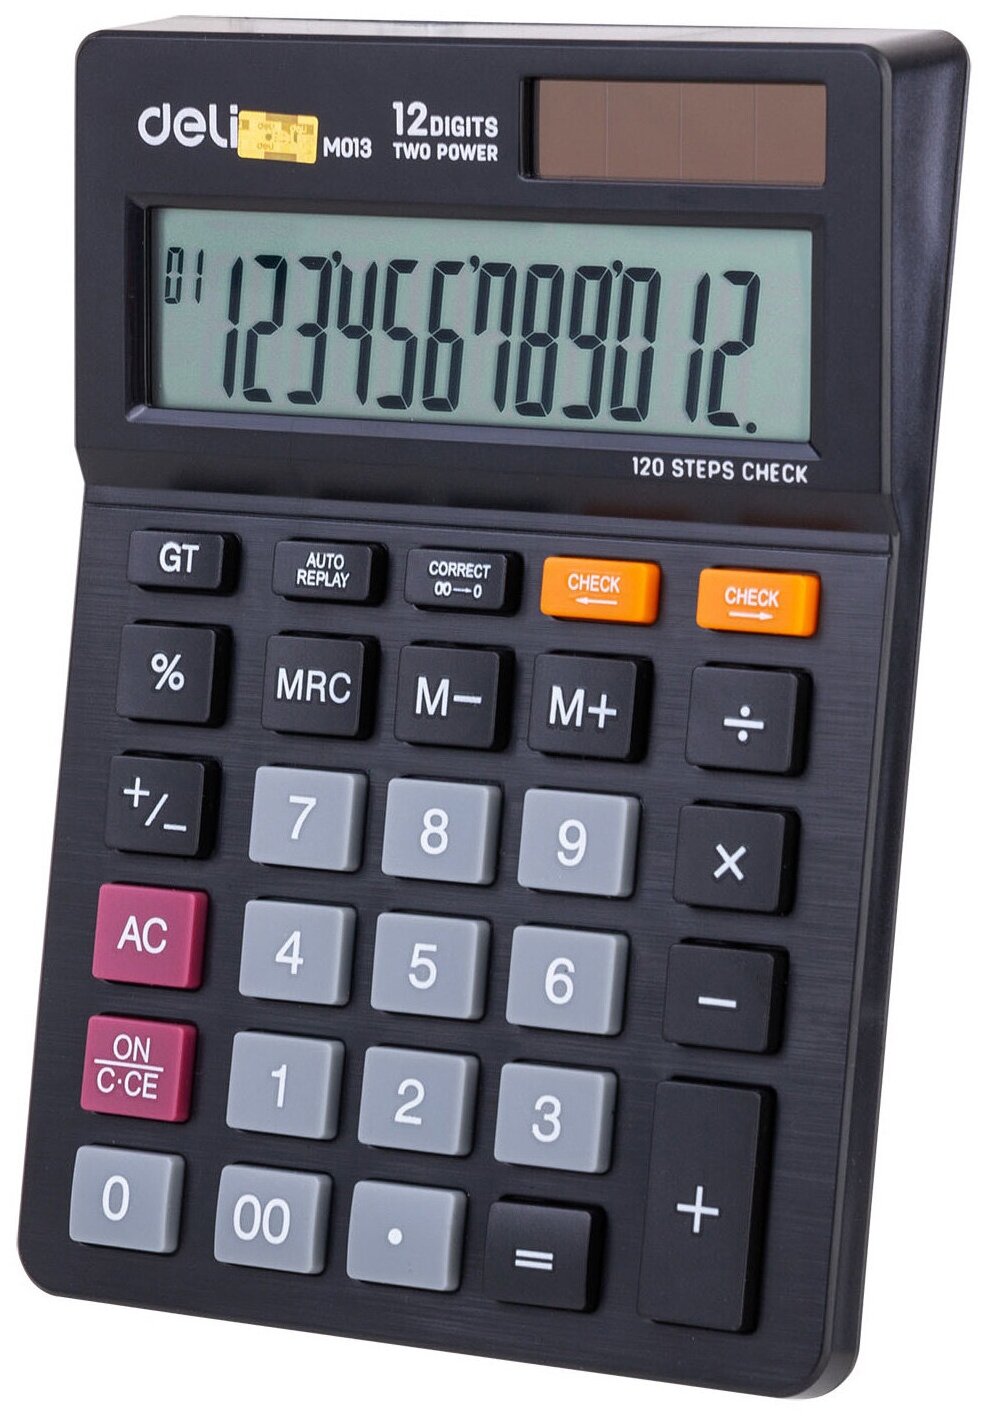 Калькулятор настольный DELI EM01320 черный 12-разр.